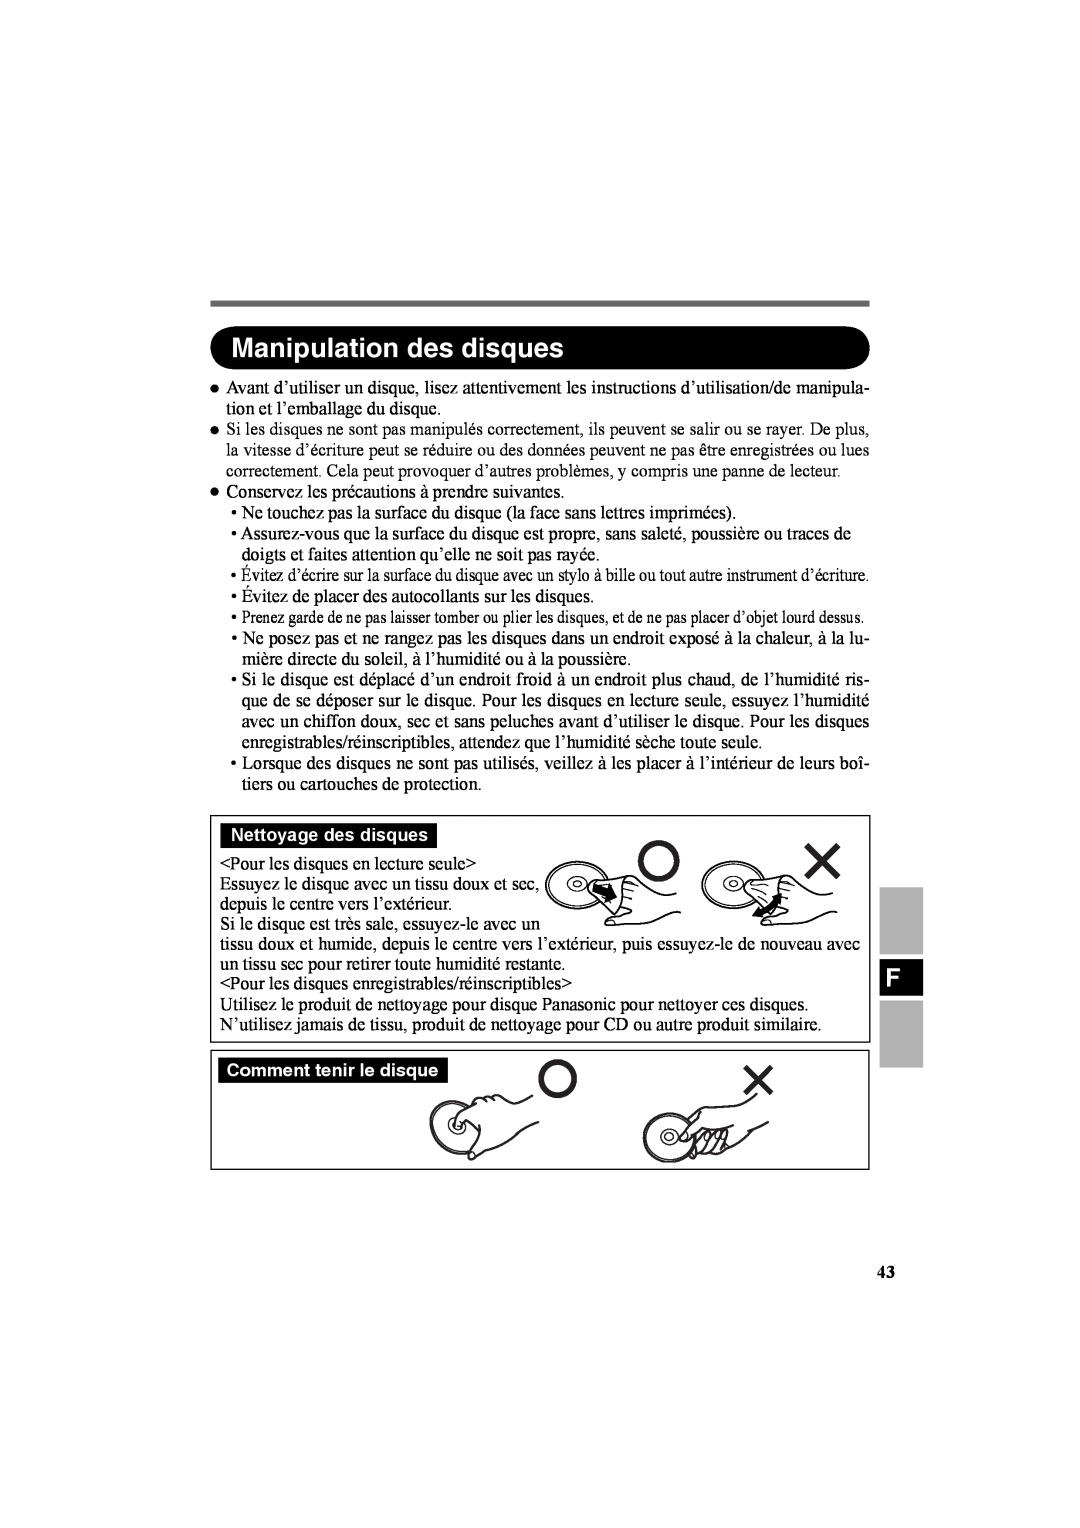 Panasonic CF-VDR301U specifications Manipulation des disques, Nettoyage des disques, Comment tenir le disque 